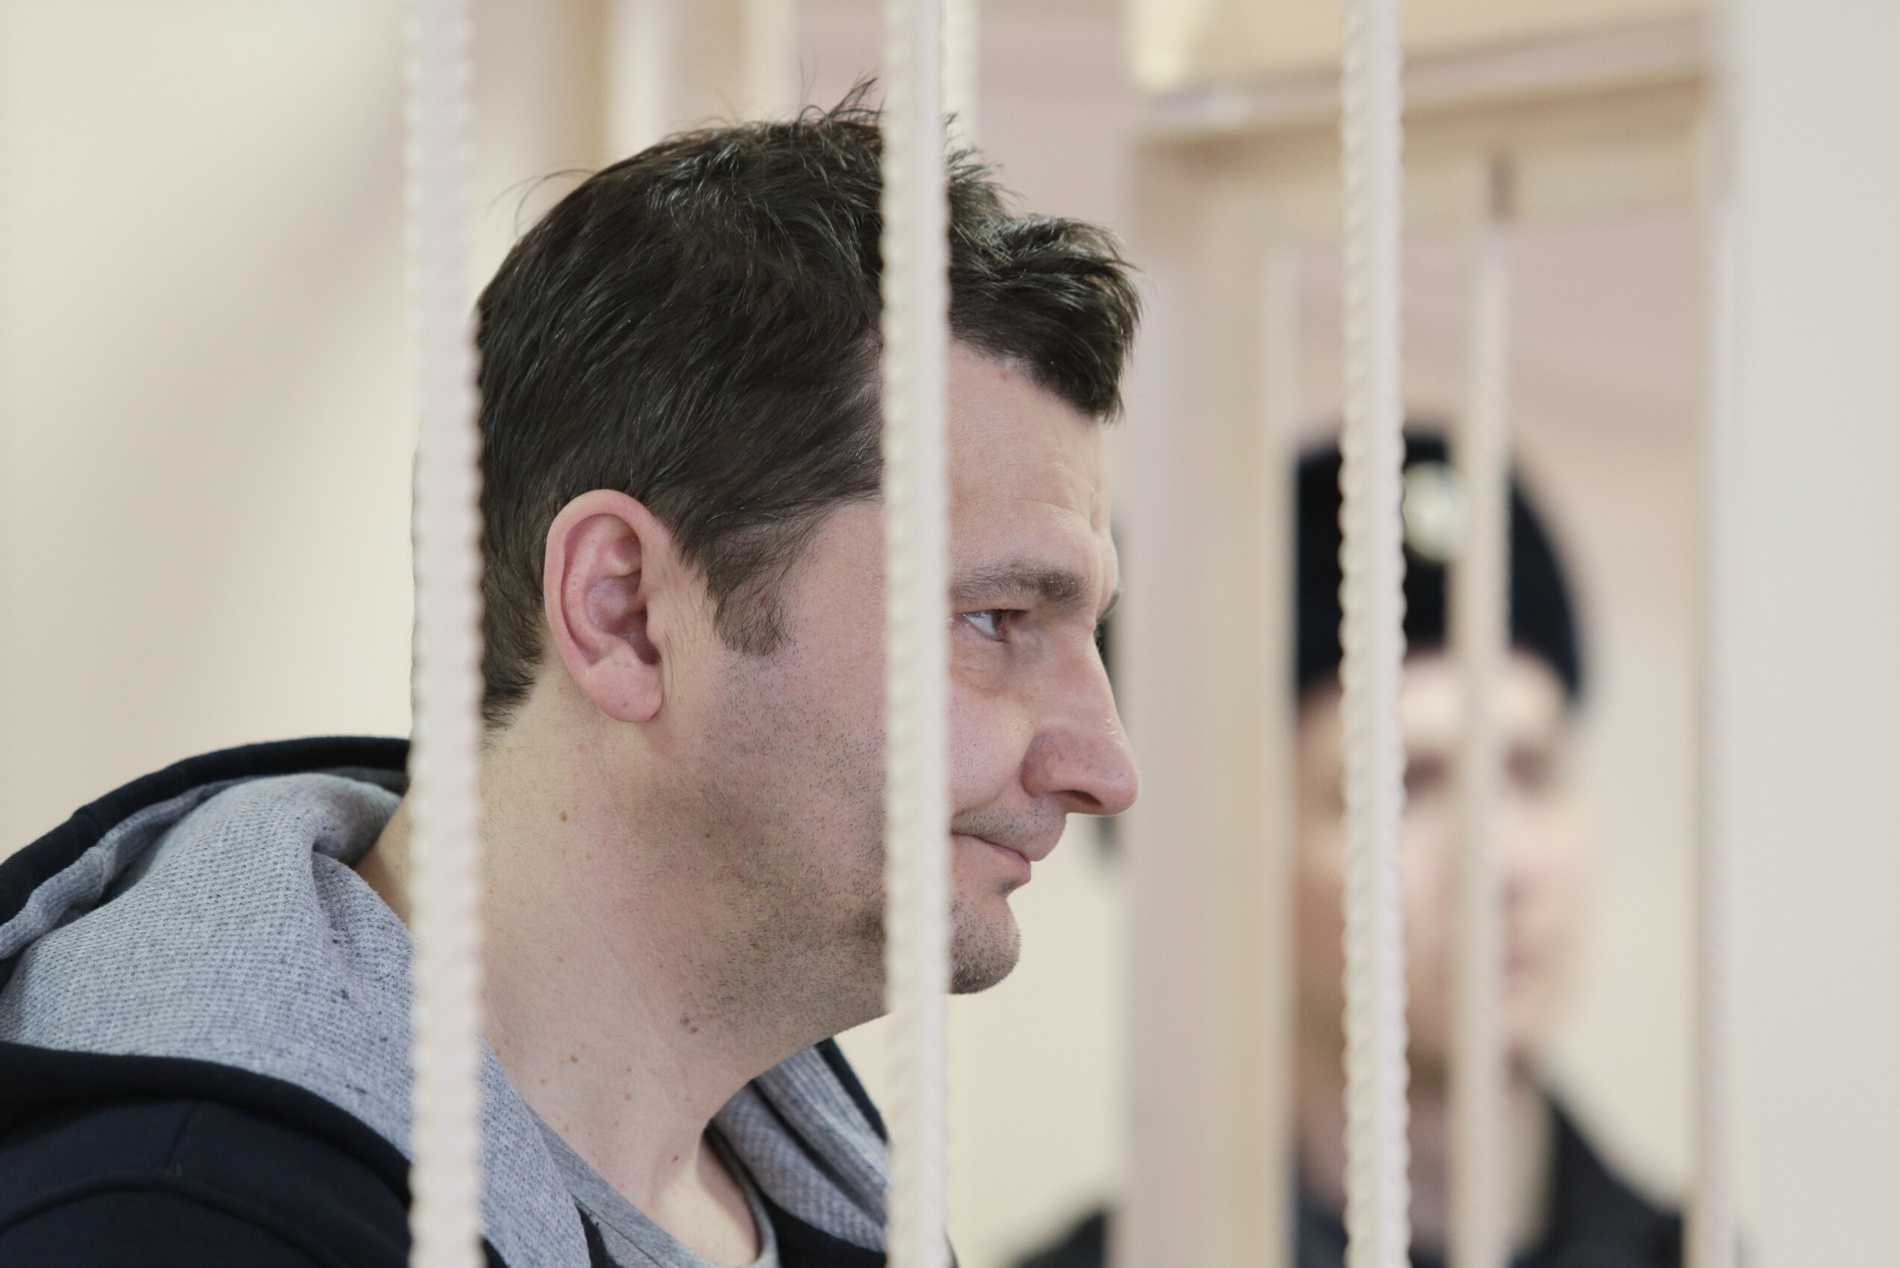 Юрия Карпусенко в суд сопровождали пять полицейских